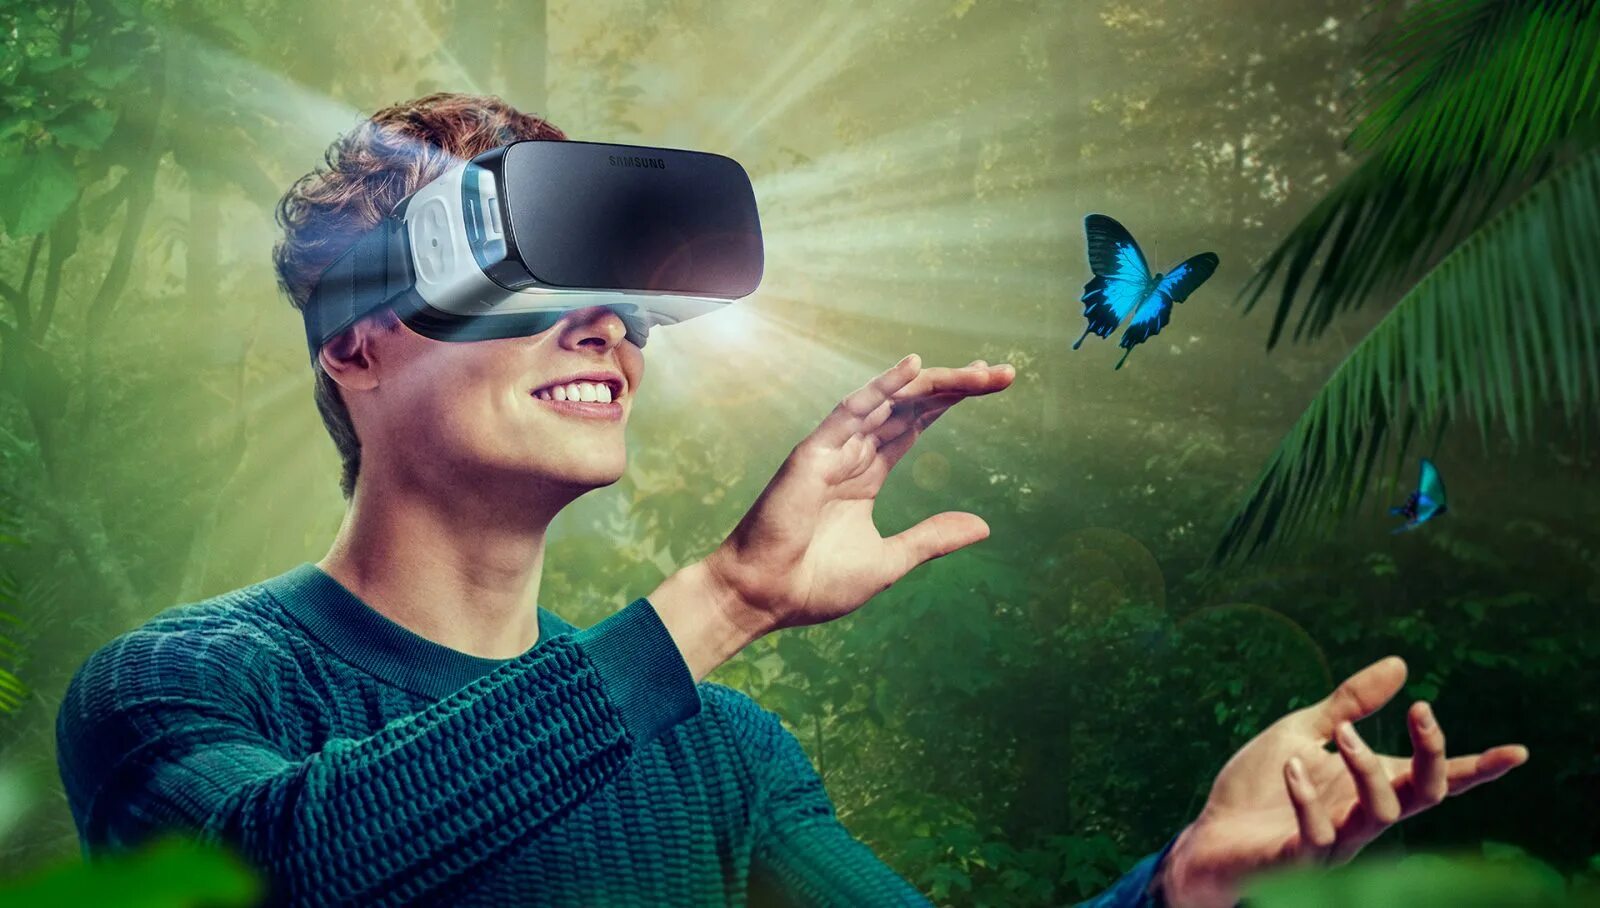 VR виртуальная реальность. Визуальная реальность. Иртуальная реальность. Очки виртуальной реальности на человеке. Мечта в игре становится реальностью 47